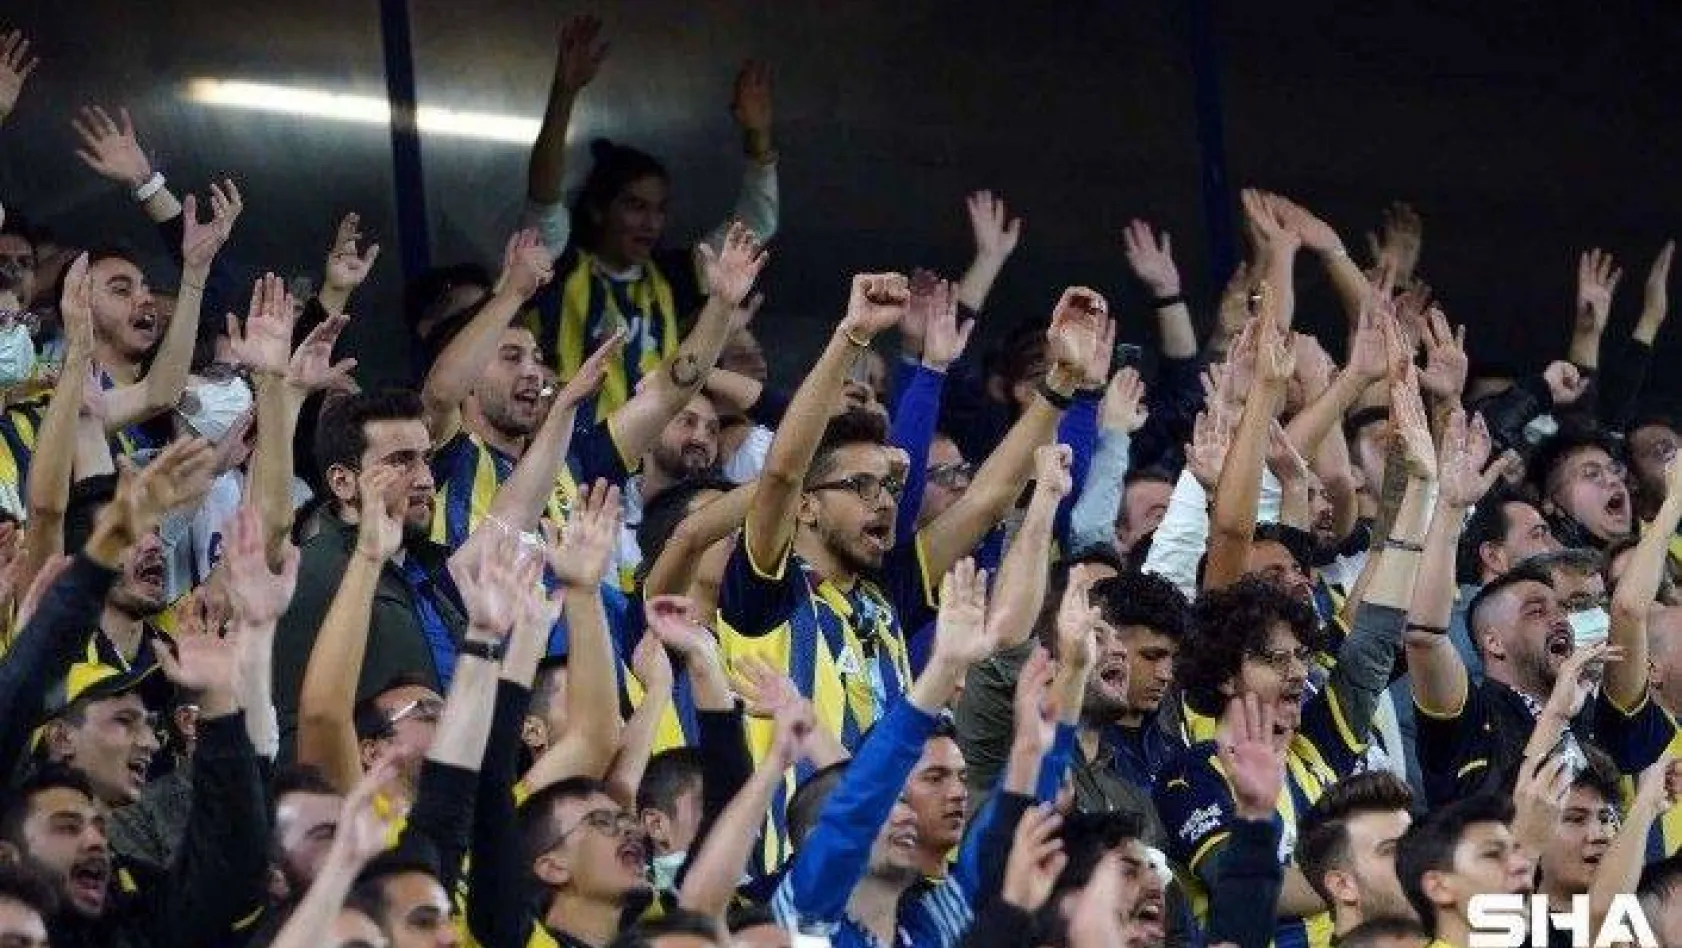 UEFA Avrupa Ligi: Fenerbahçe: 0 - Olympiakos: 1 (Maç devam ediyor)